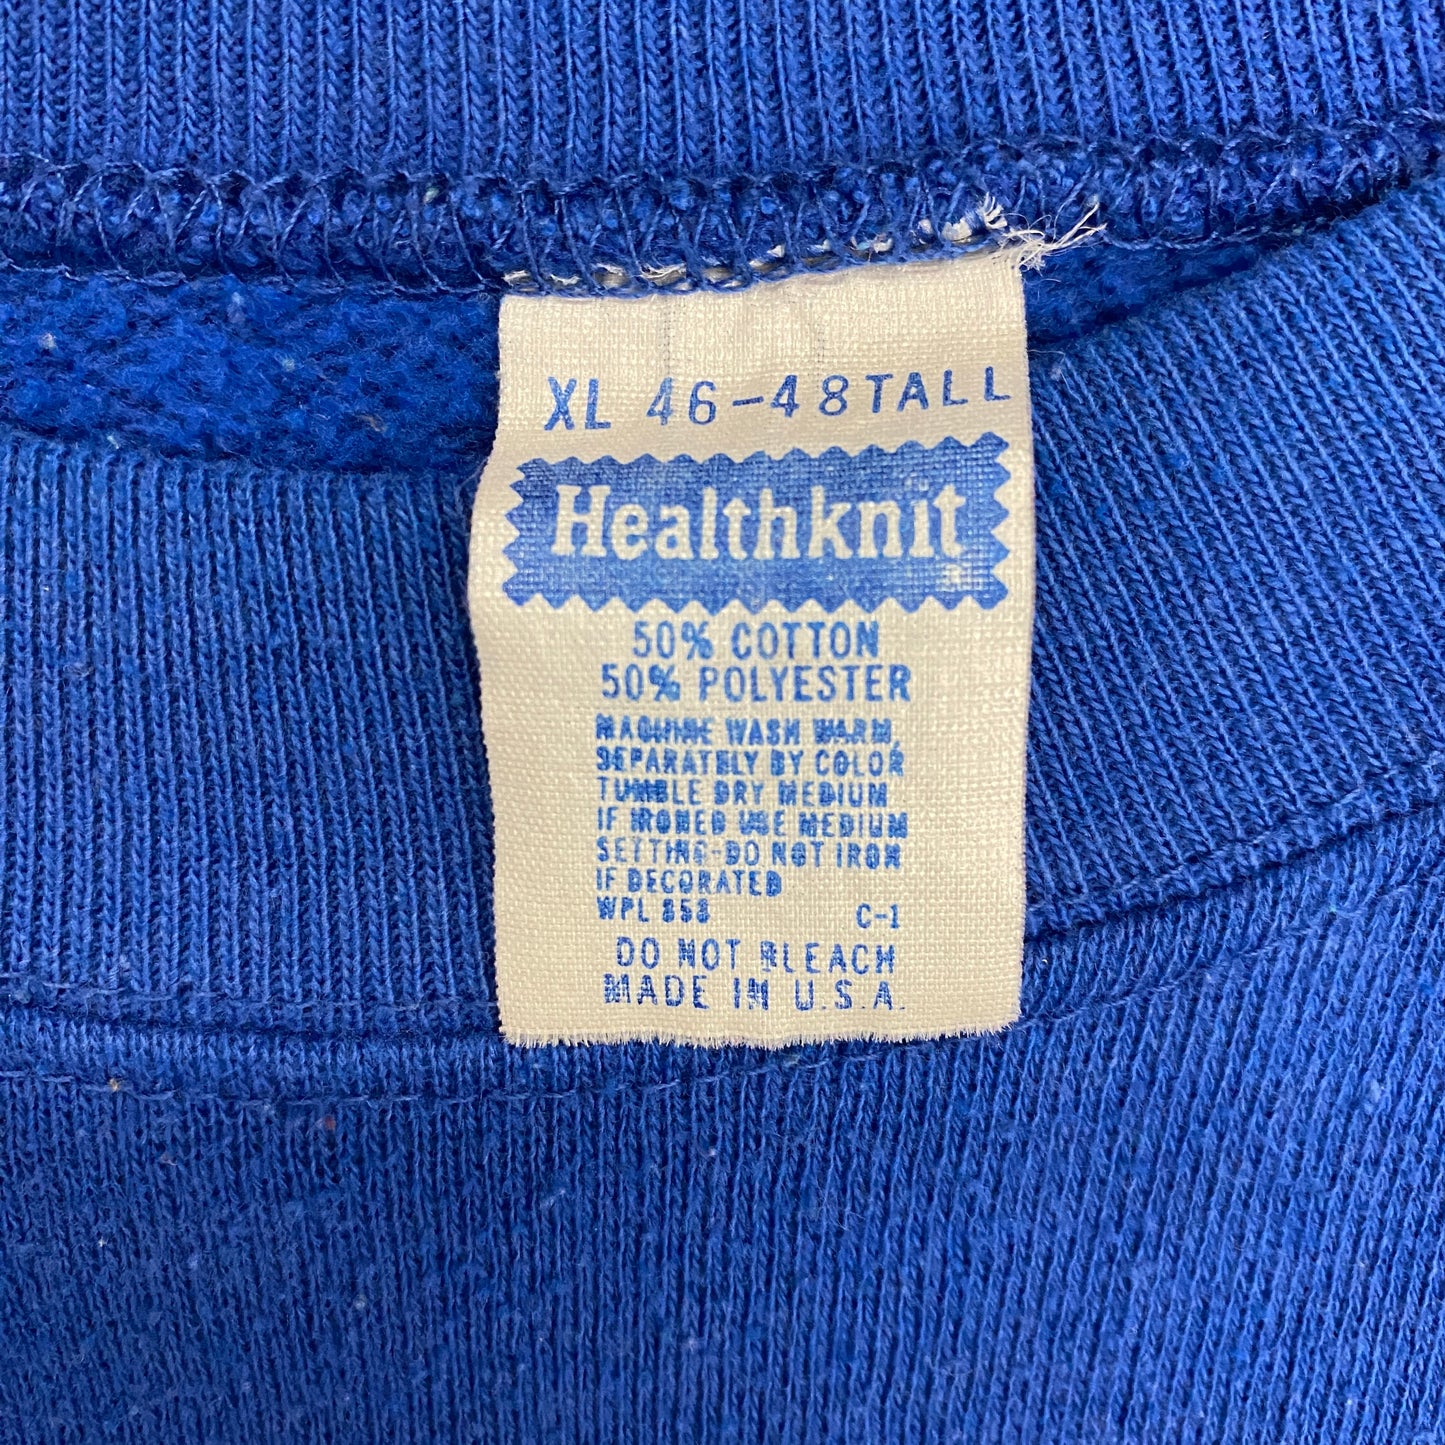 1980s Healthknit Royal Blue Raglan Sweatshirt - Size XL